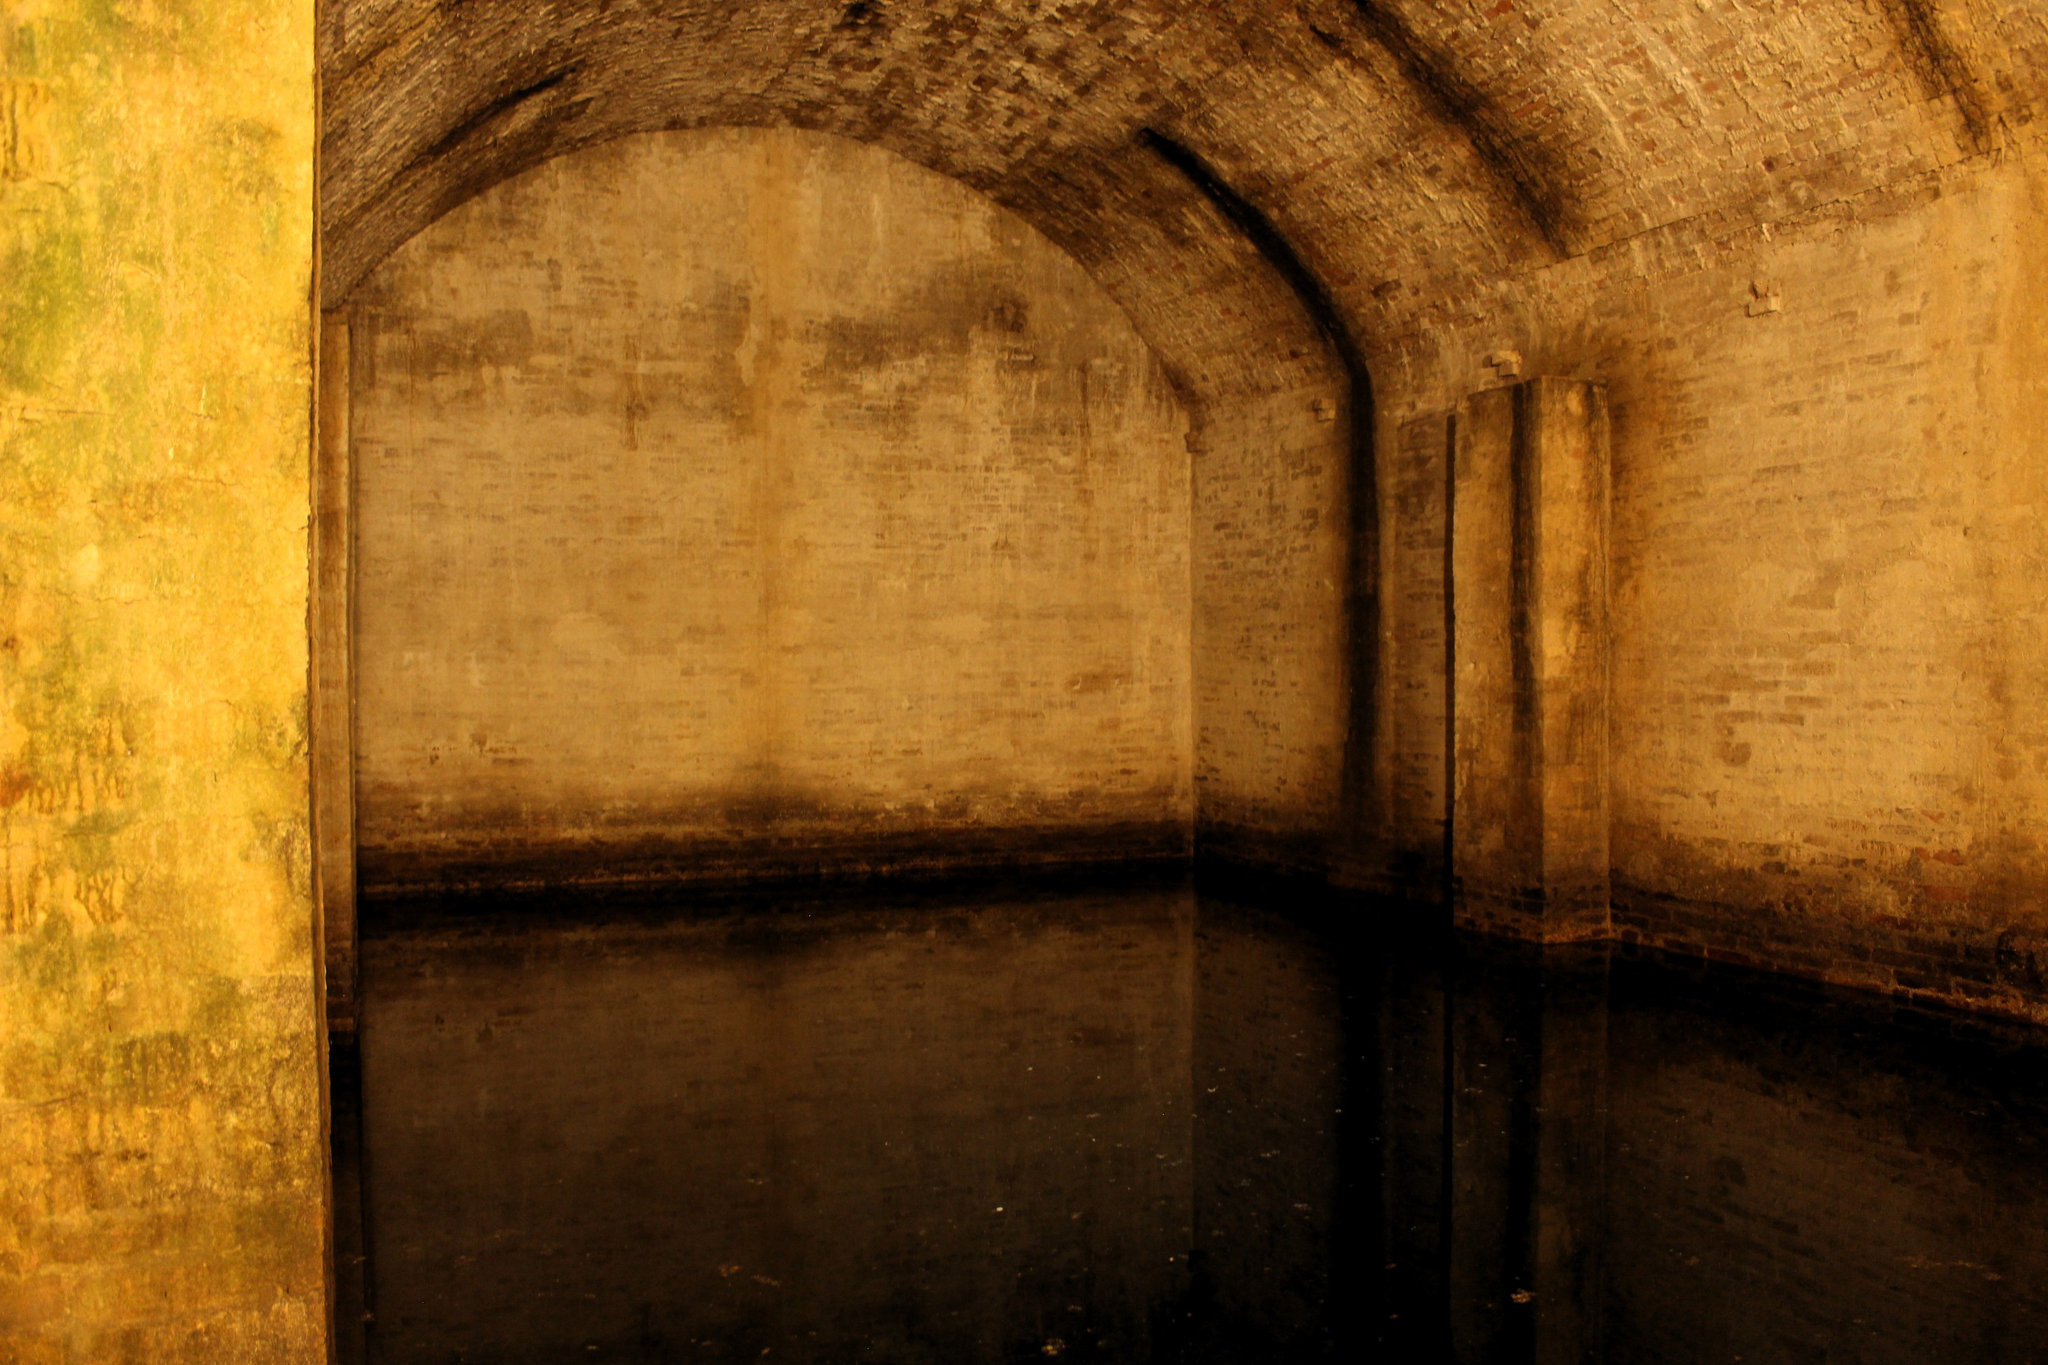 Civitella del Tronto – water cistern